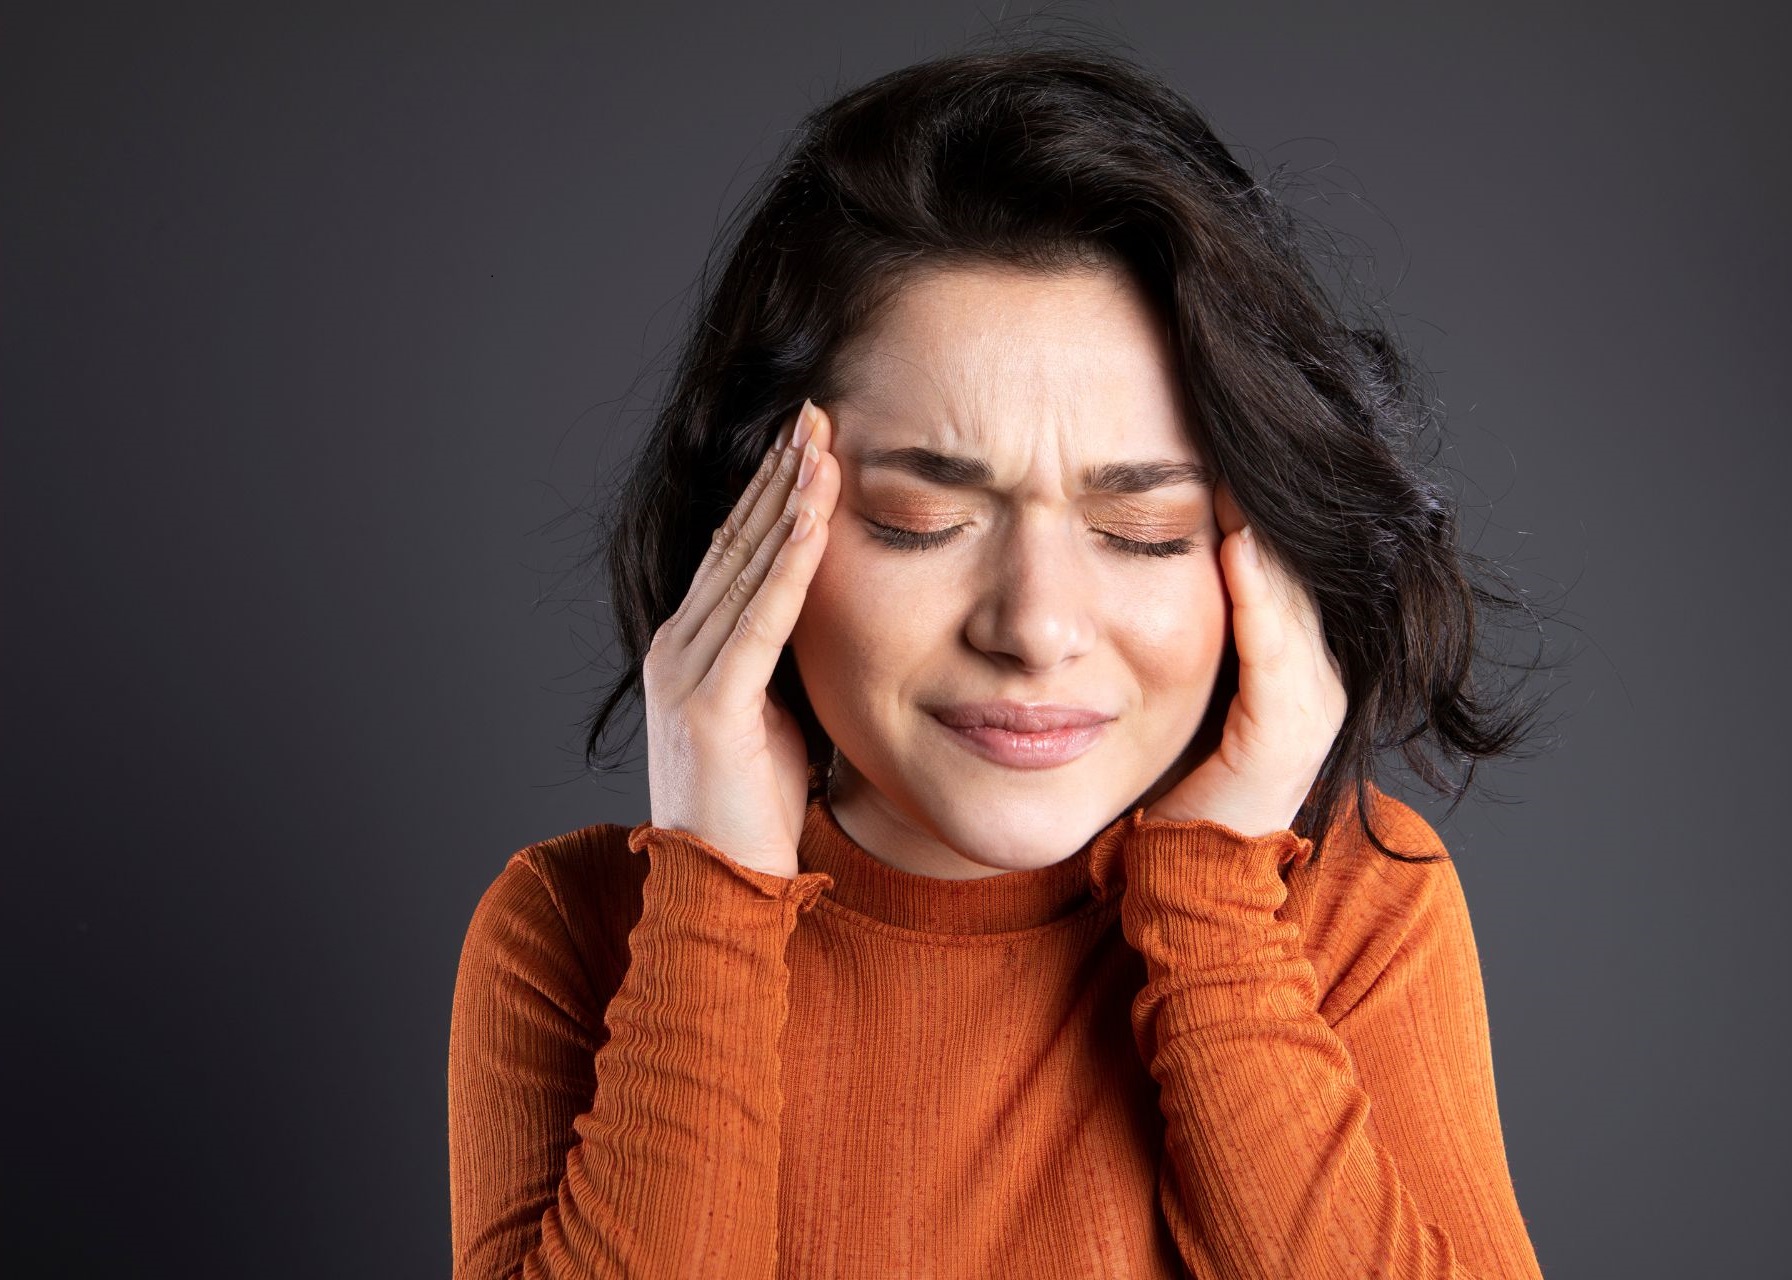 Cefaleia pode ser sintoma de erro refrativo?